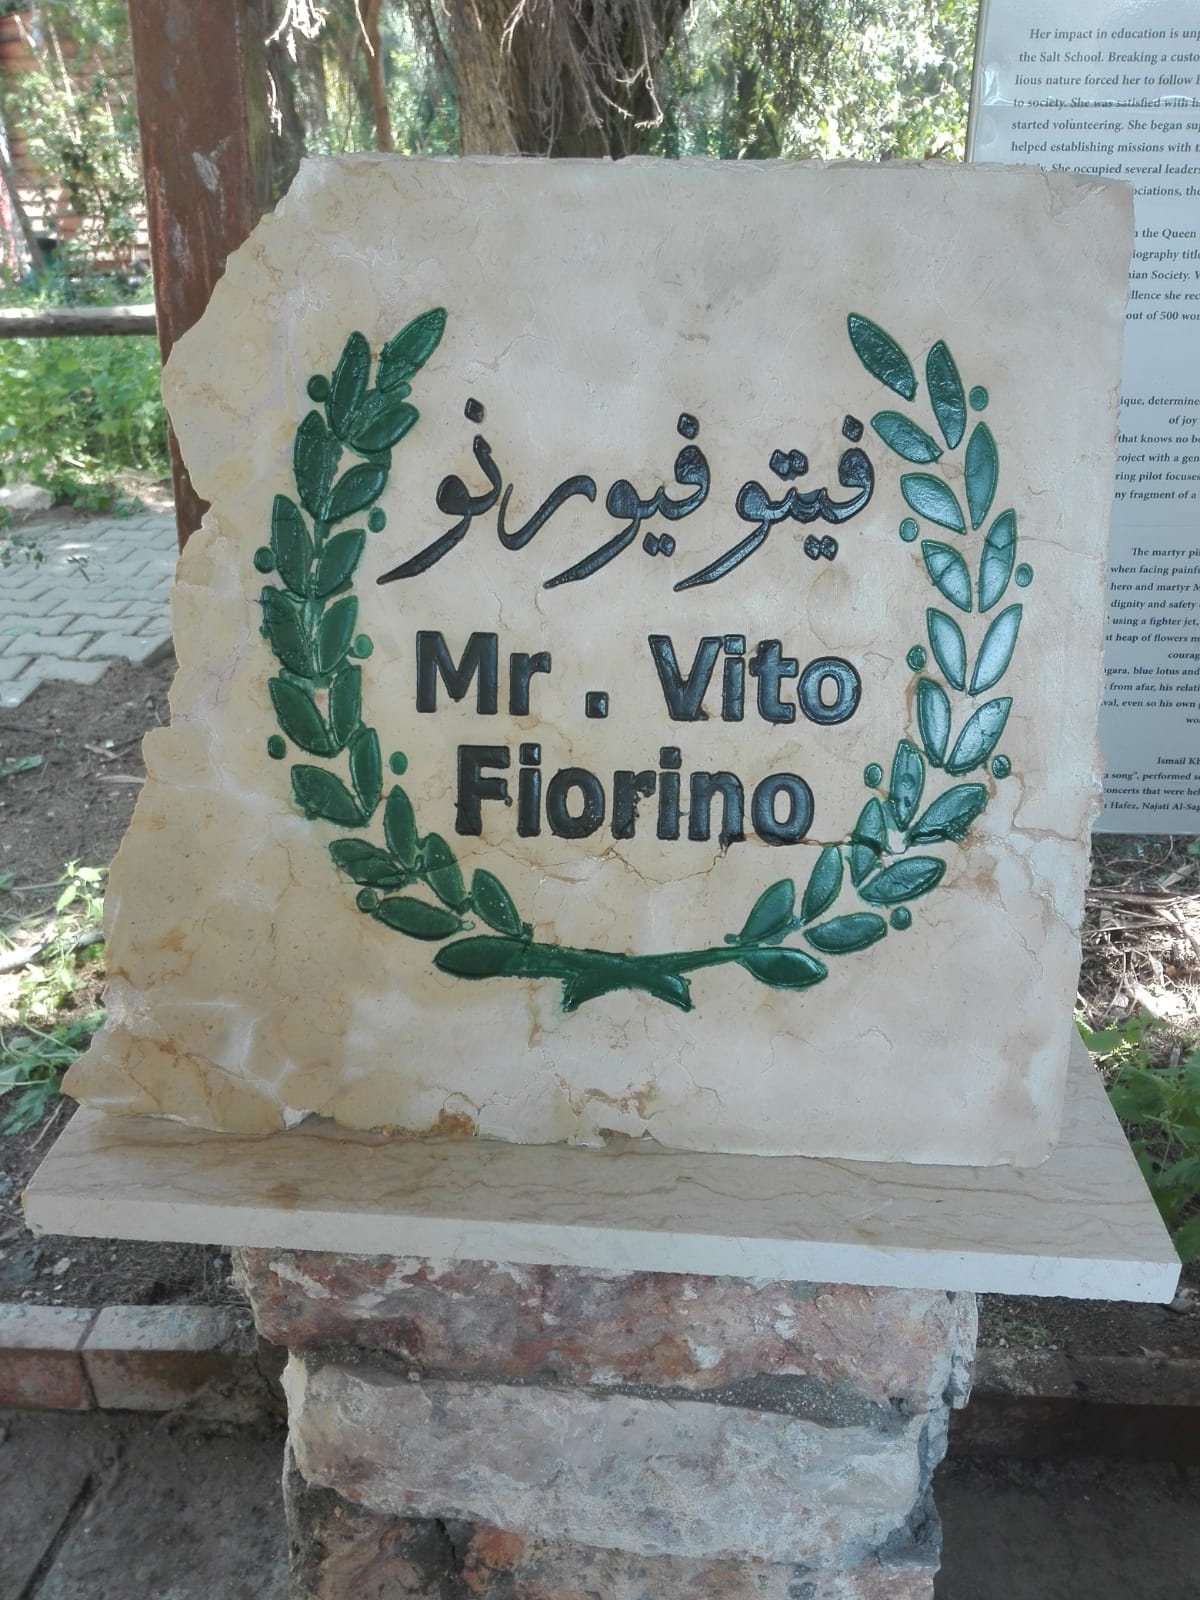 The memorial stone for Fiorino